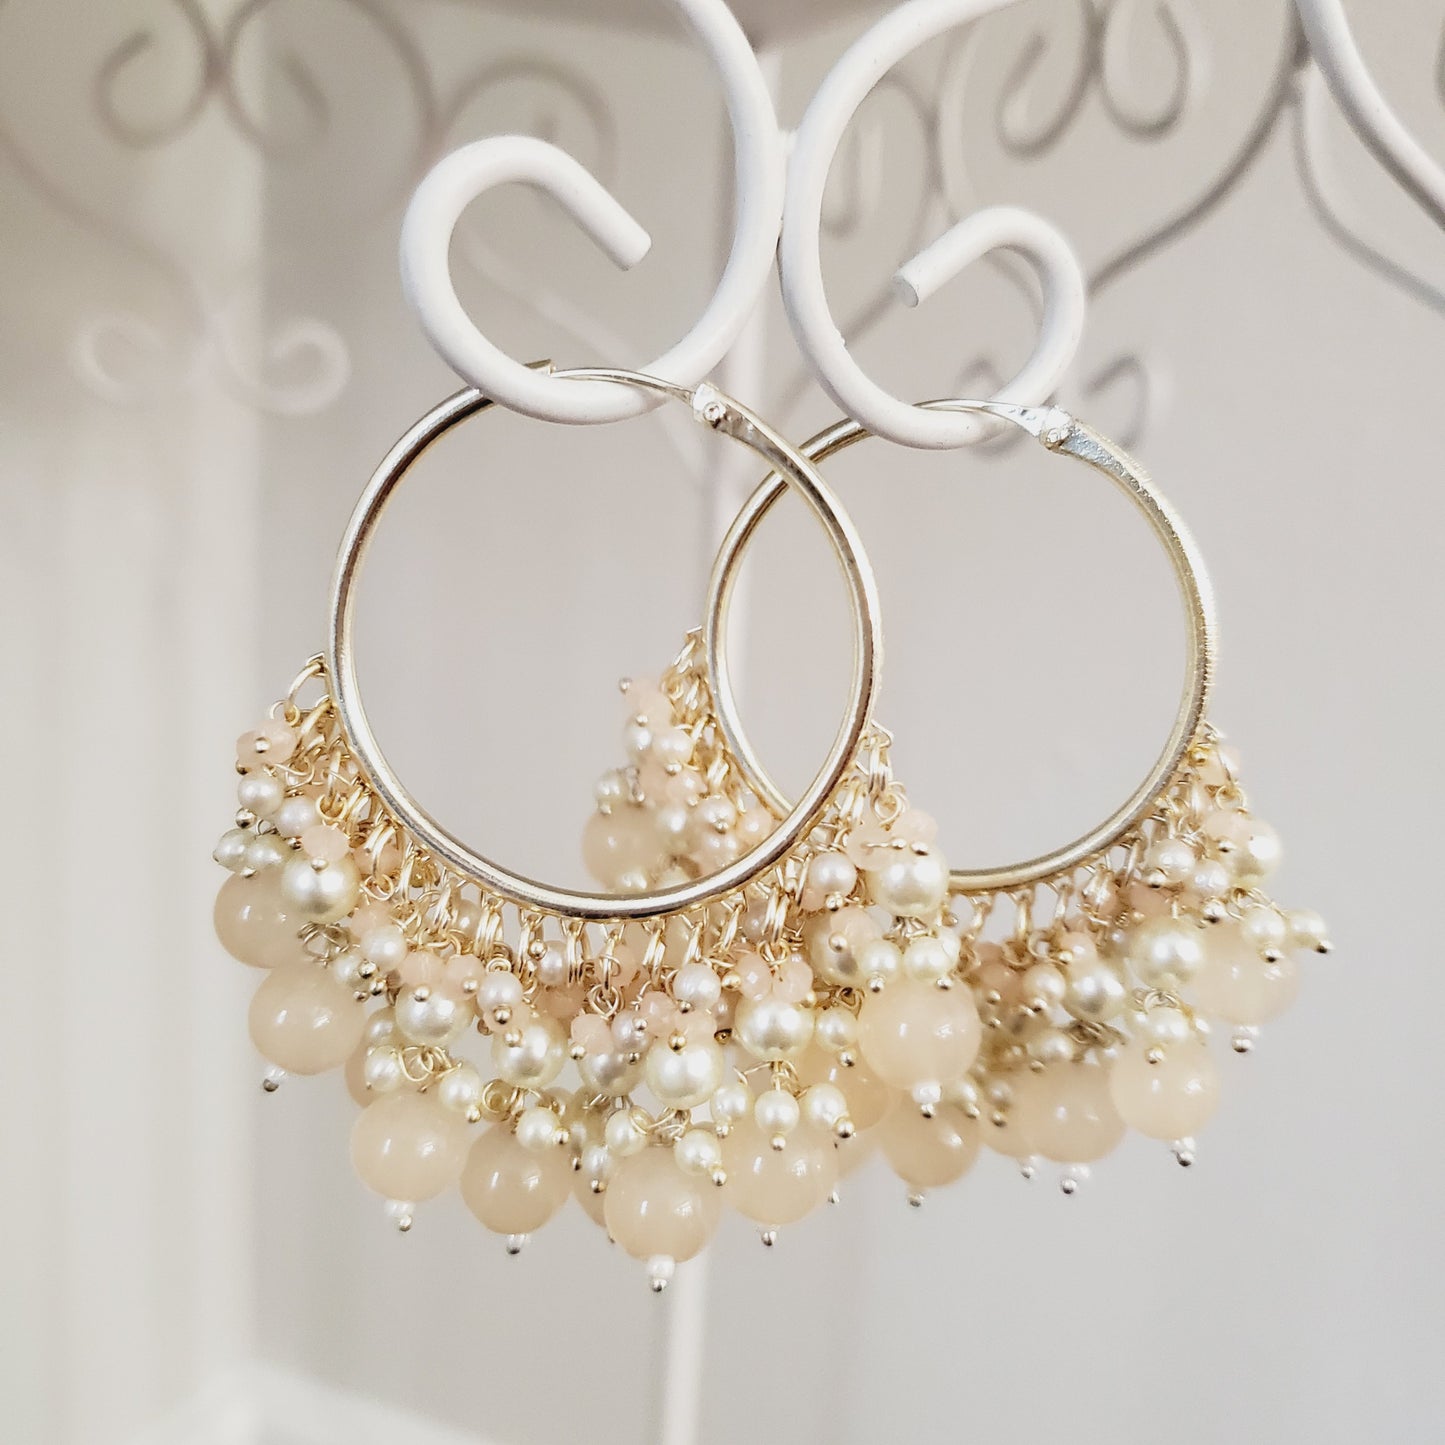 Peach Beaded with Pearls Gold Metal Hoops Earrings